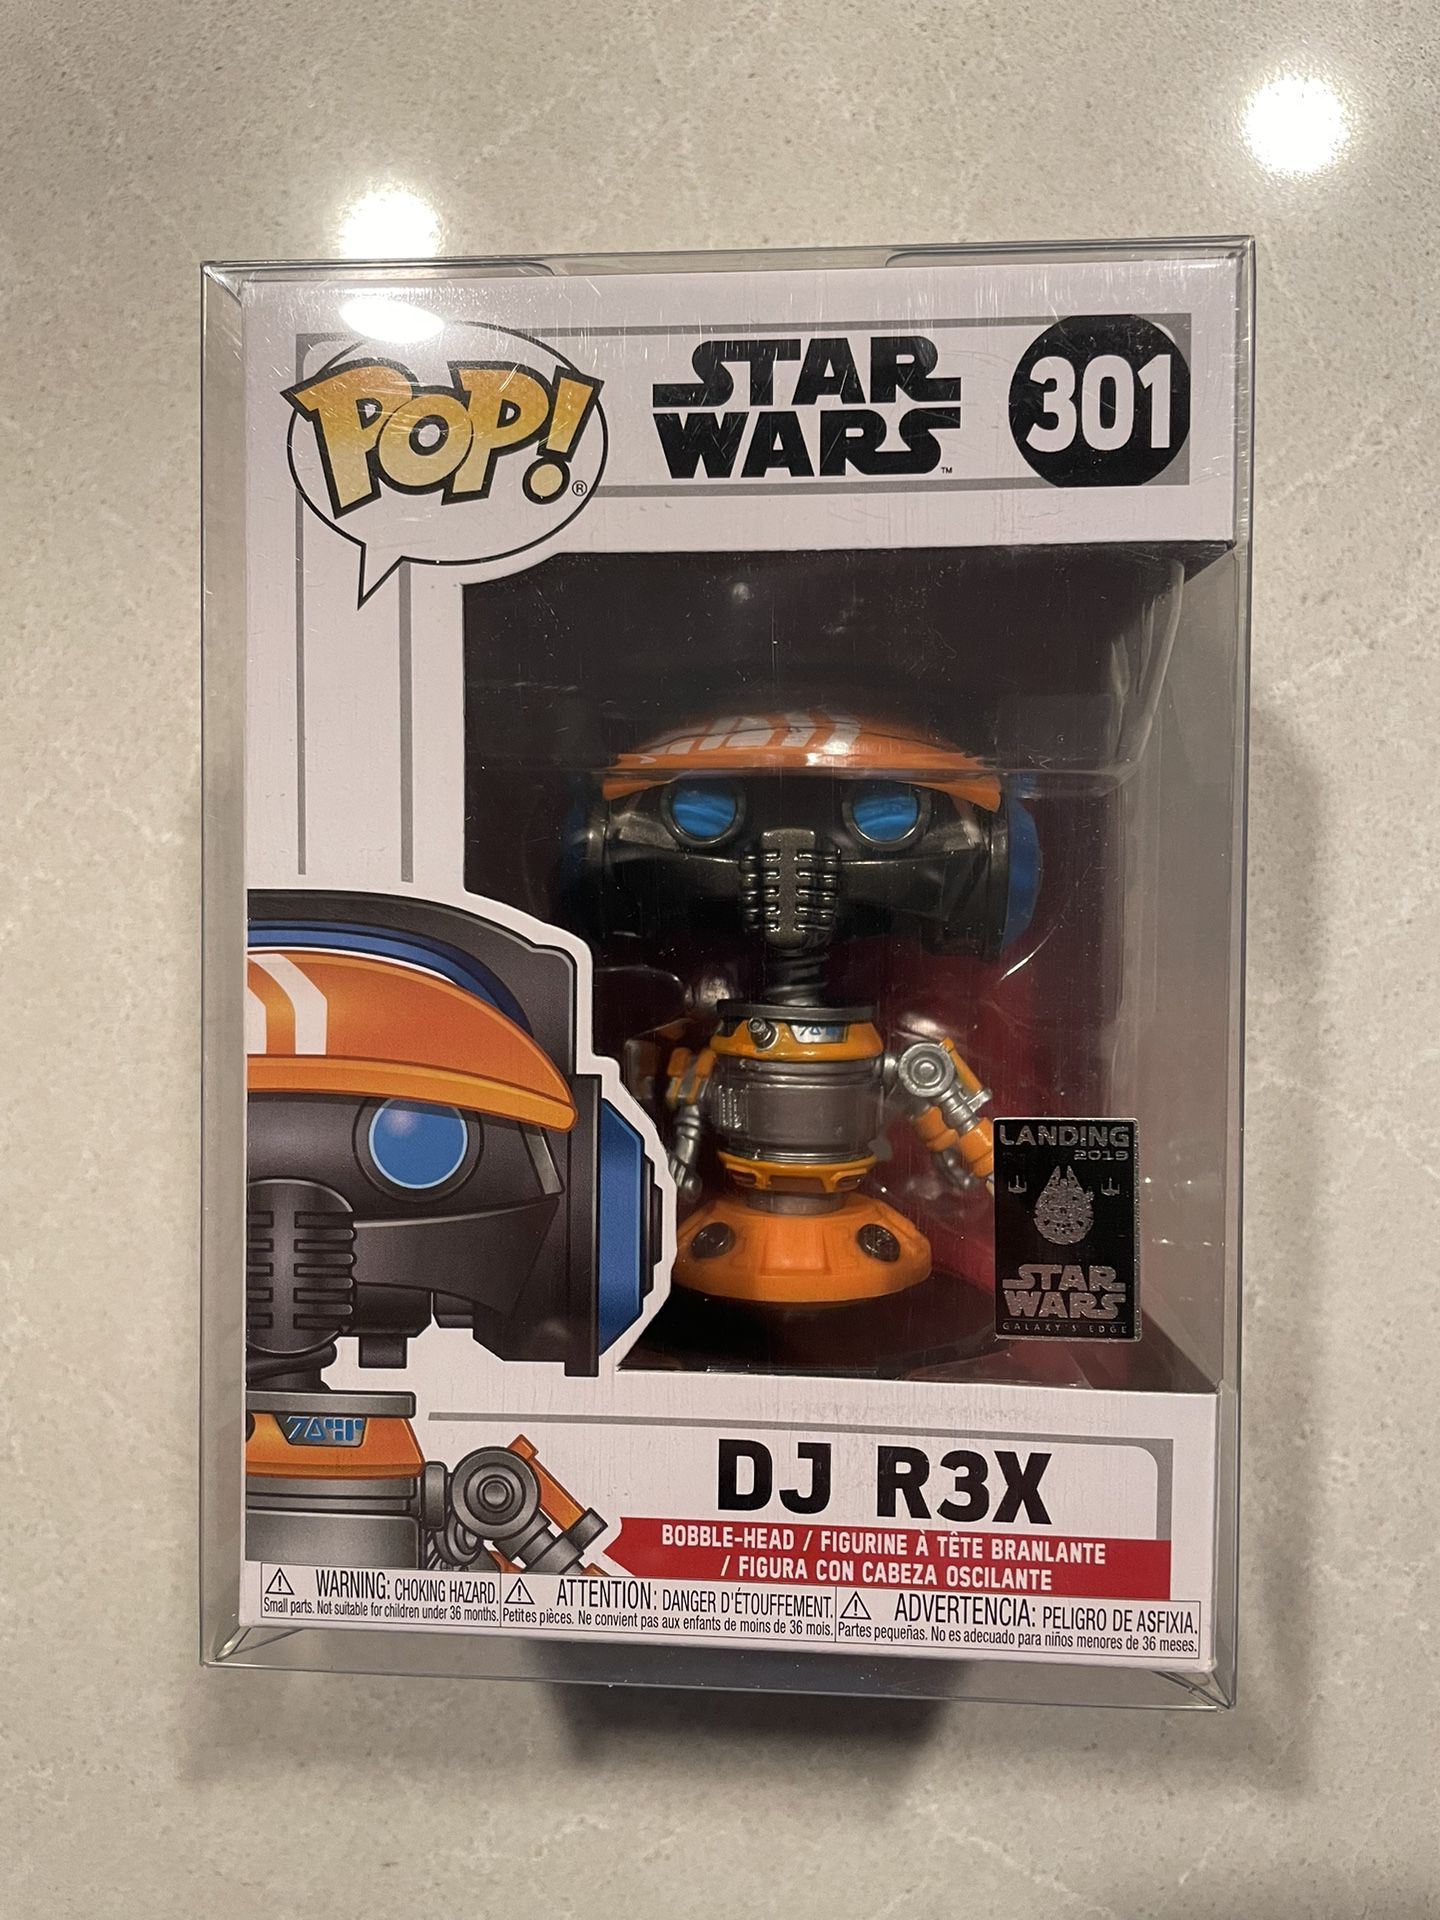 DJ R3X Funko Pop *MINT* Galaxy’s Edge Exclusive Droids Star Wars 301 with protector Jedi REX